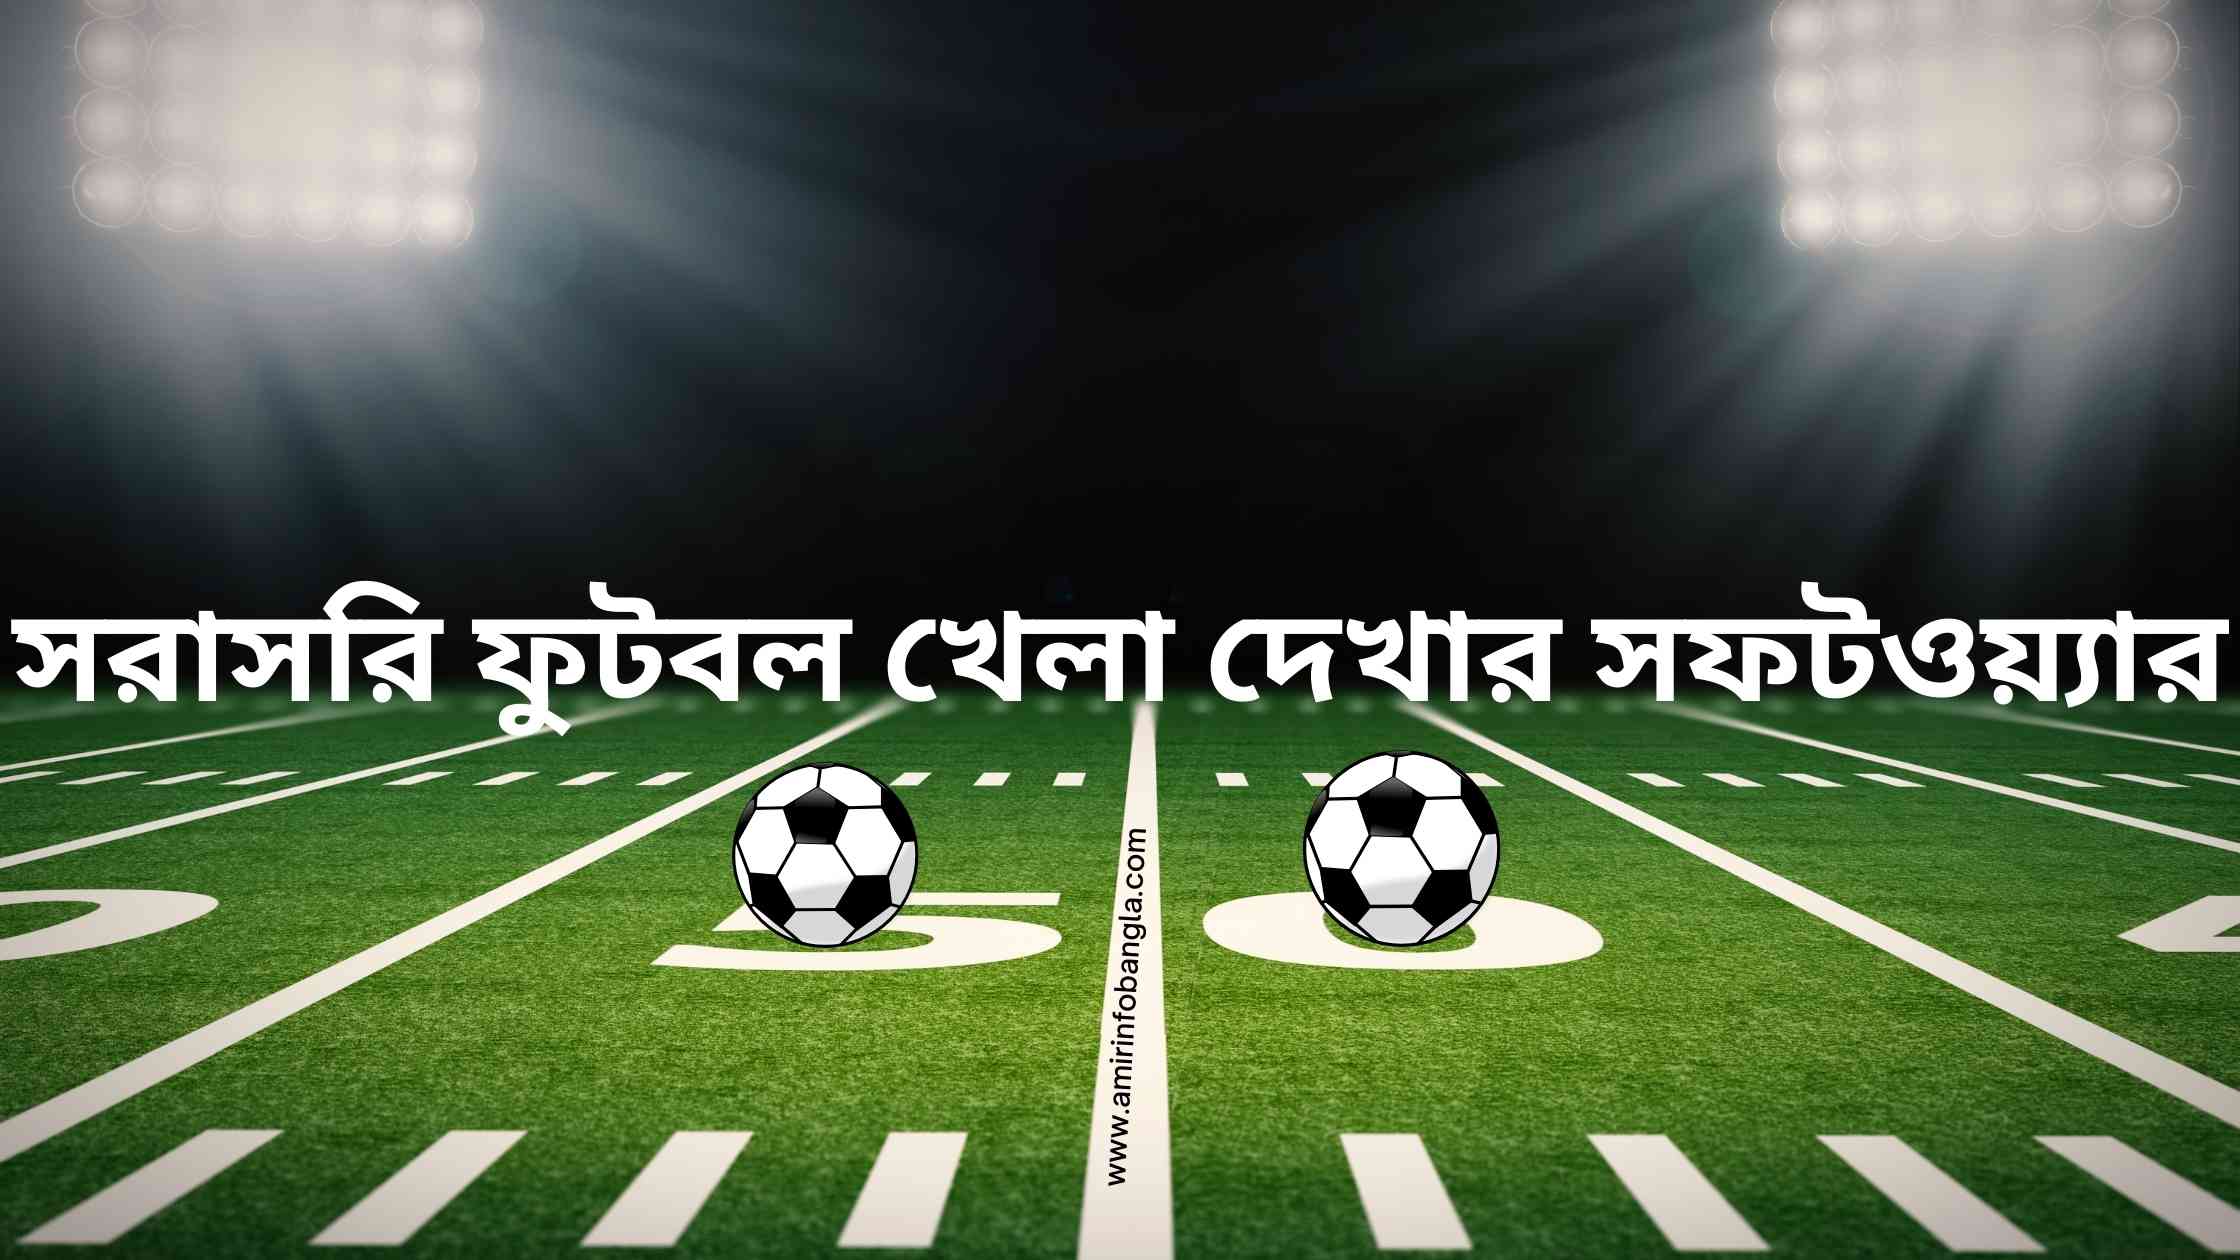 সরাসরি ফুটবল খেলা দেখার সফটওয়্যার | Software to watch live football games in bangla || সরাসরি ফুটবল খেলা দেখতে চাই | Live Football Match Today